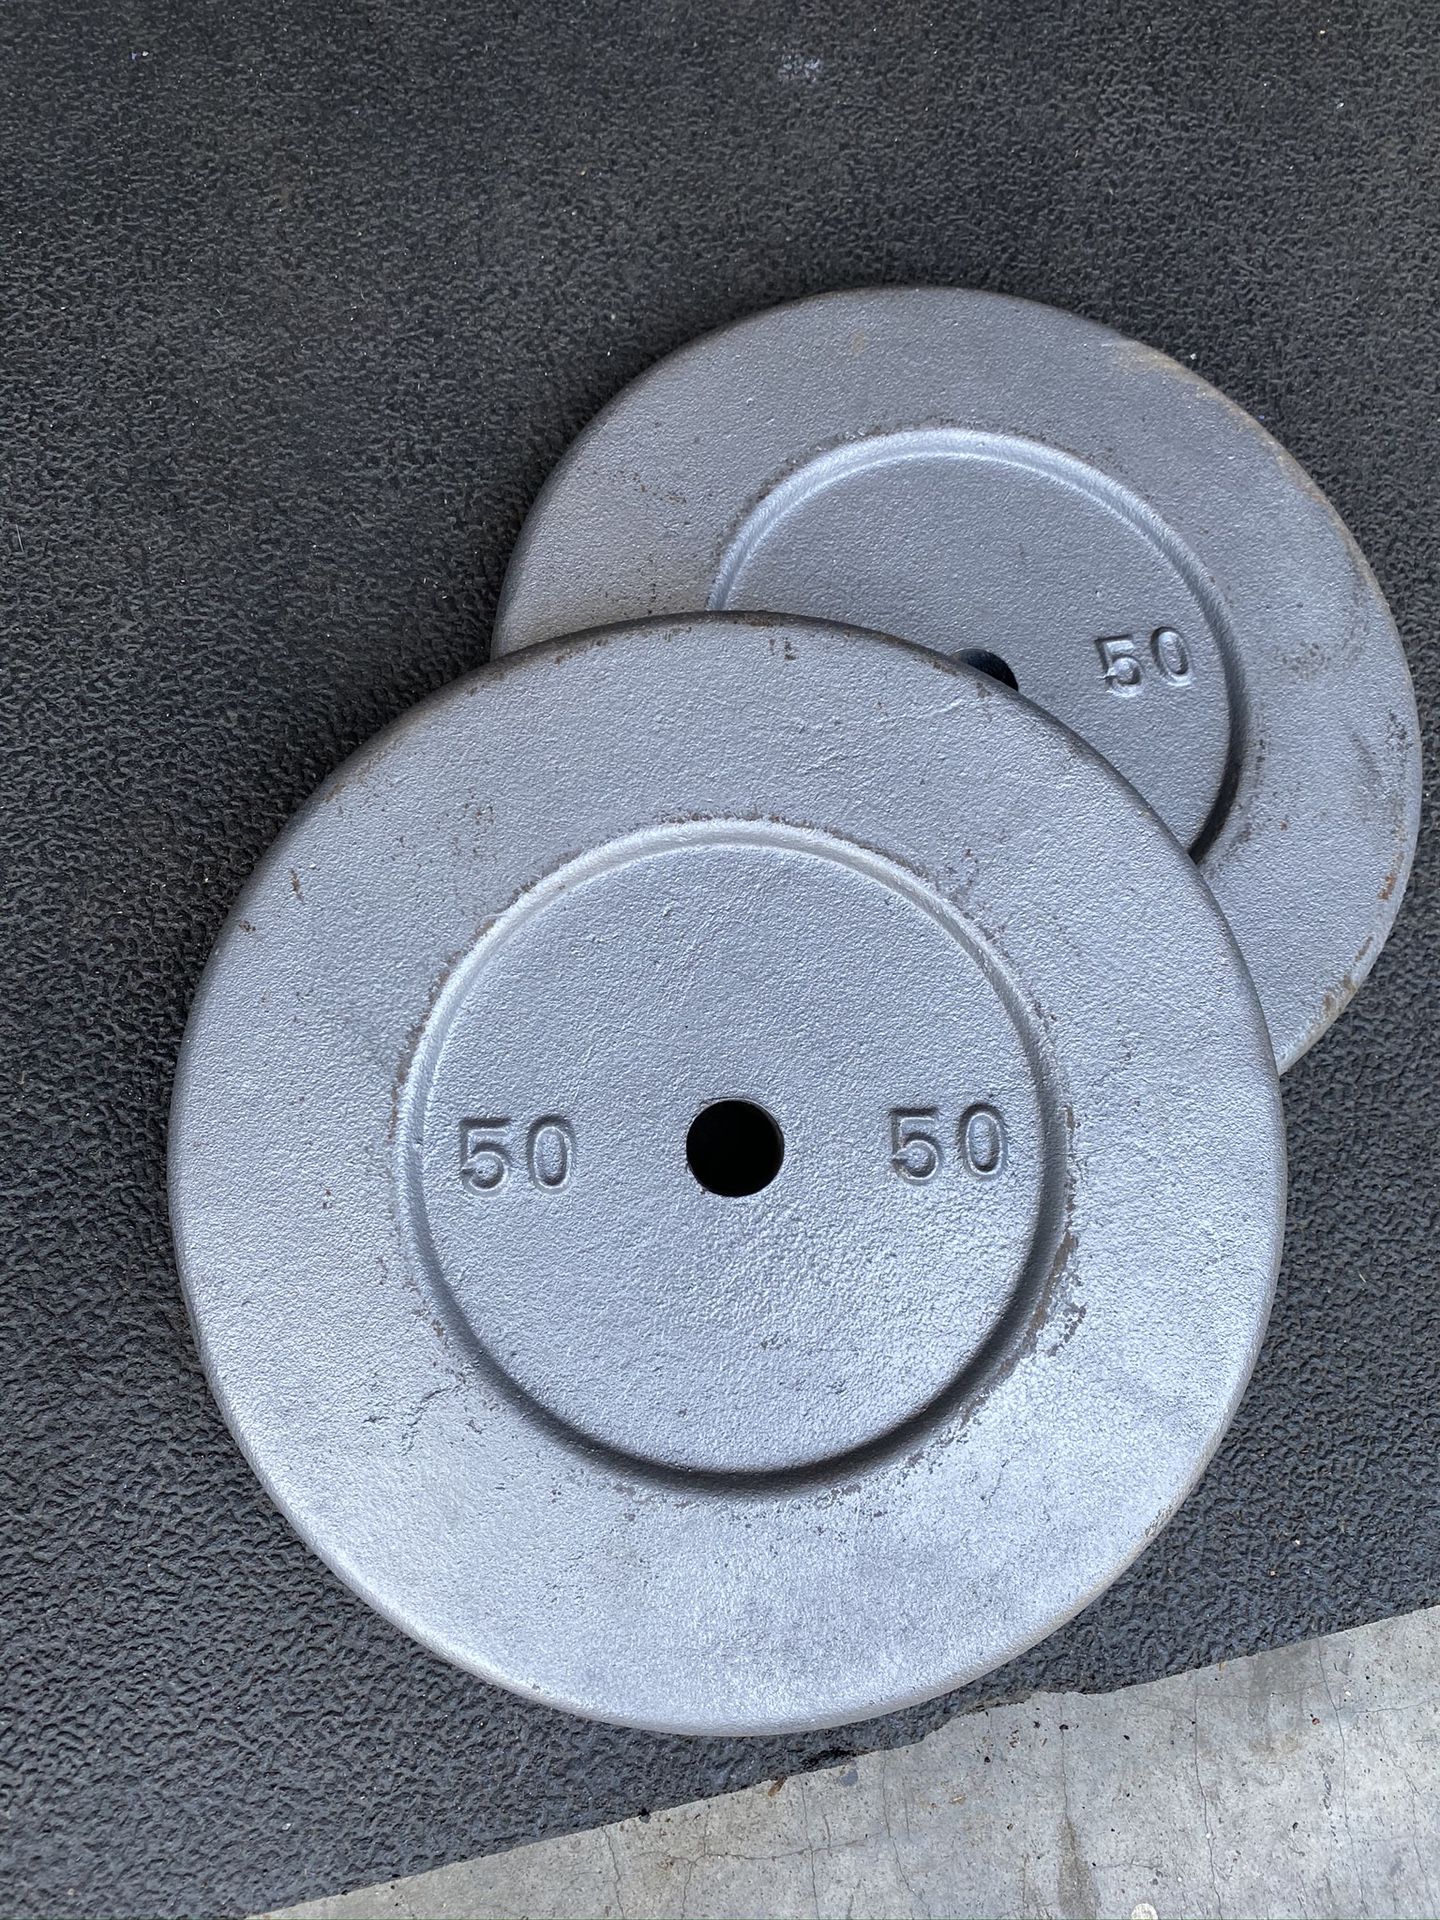 Set of 50LB standard weight